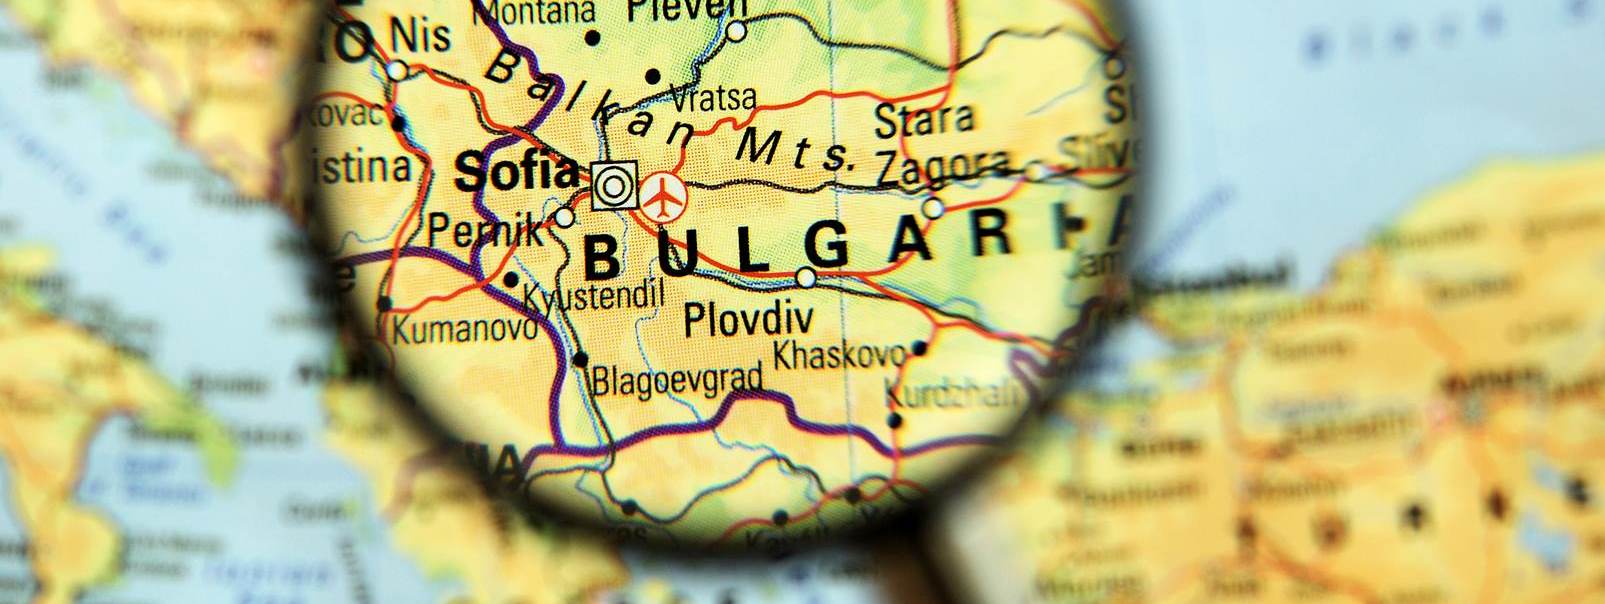 أين يمكن التقدم للحصول على تأشيرة دخول إلى بلغاريا؟